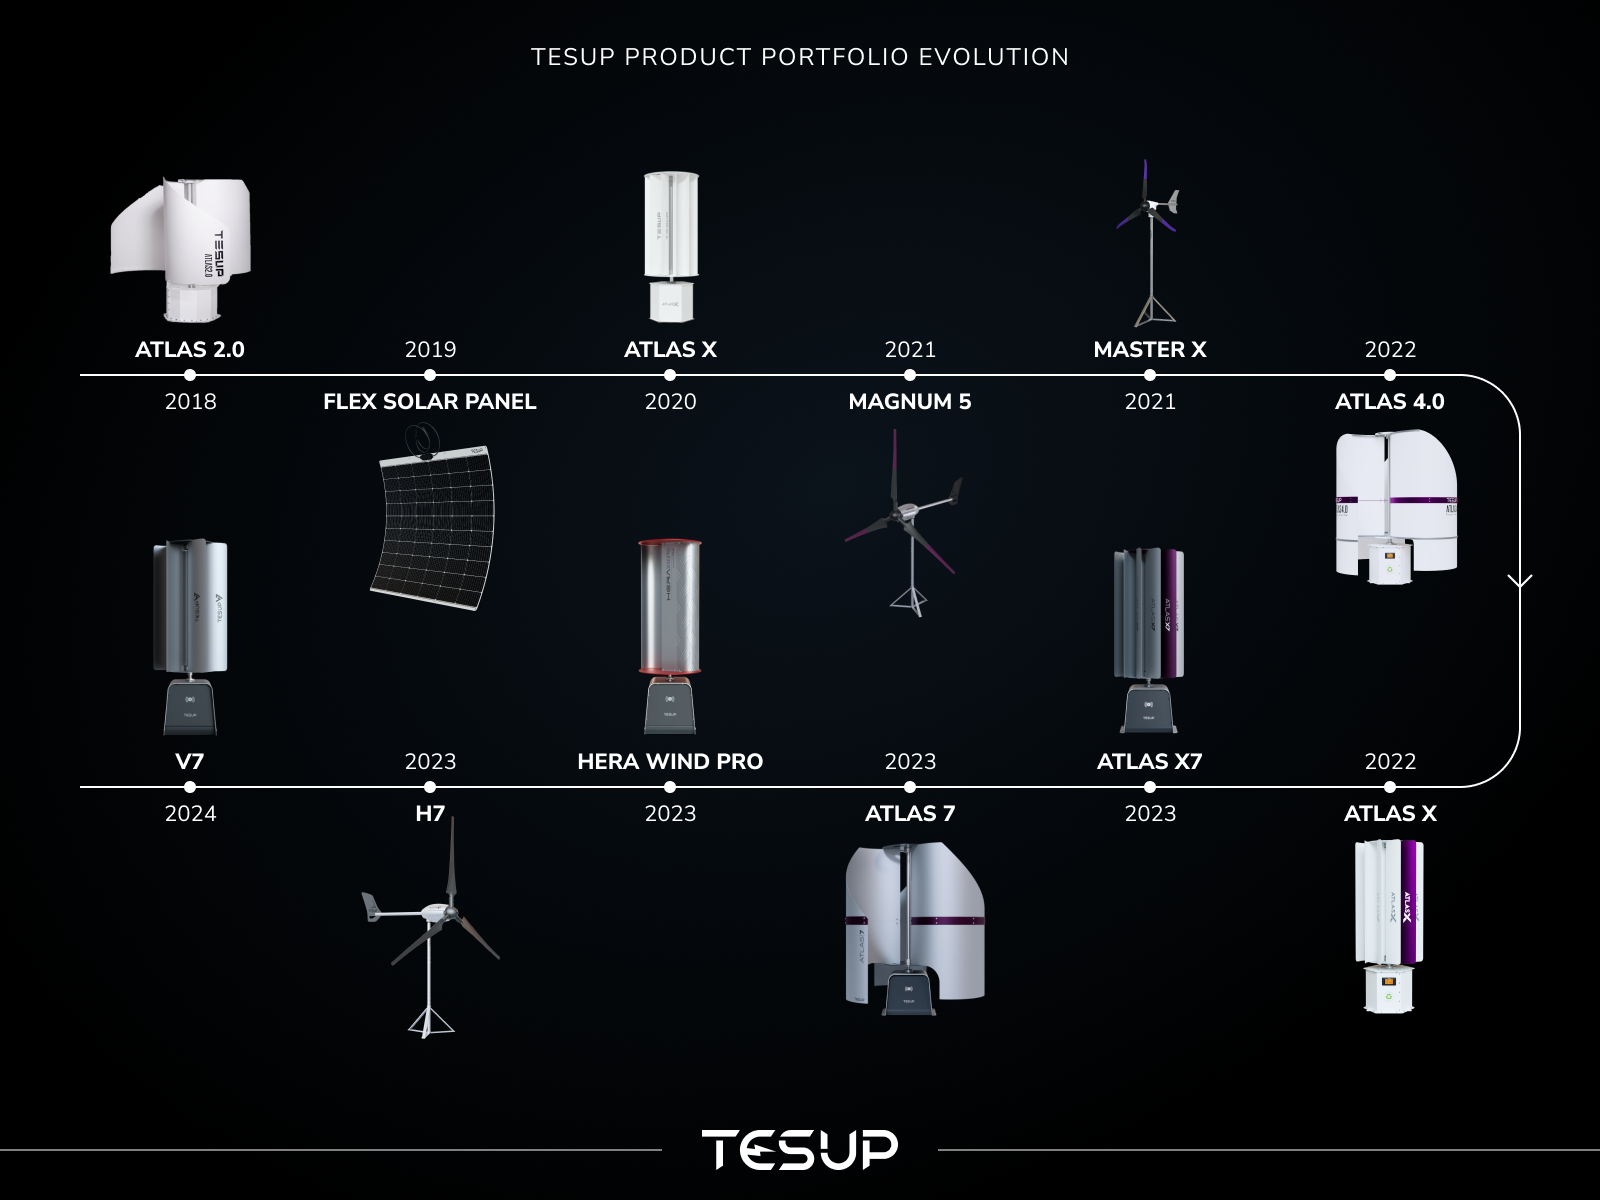 En aldrig sinande resa: TESUP Product Portfolio Evolution